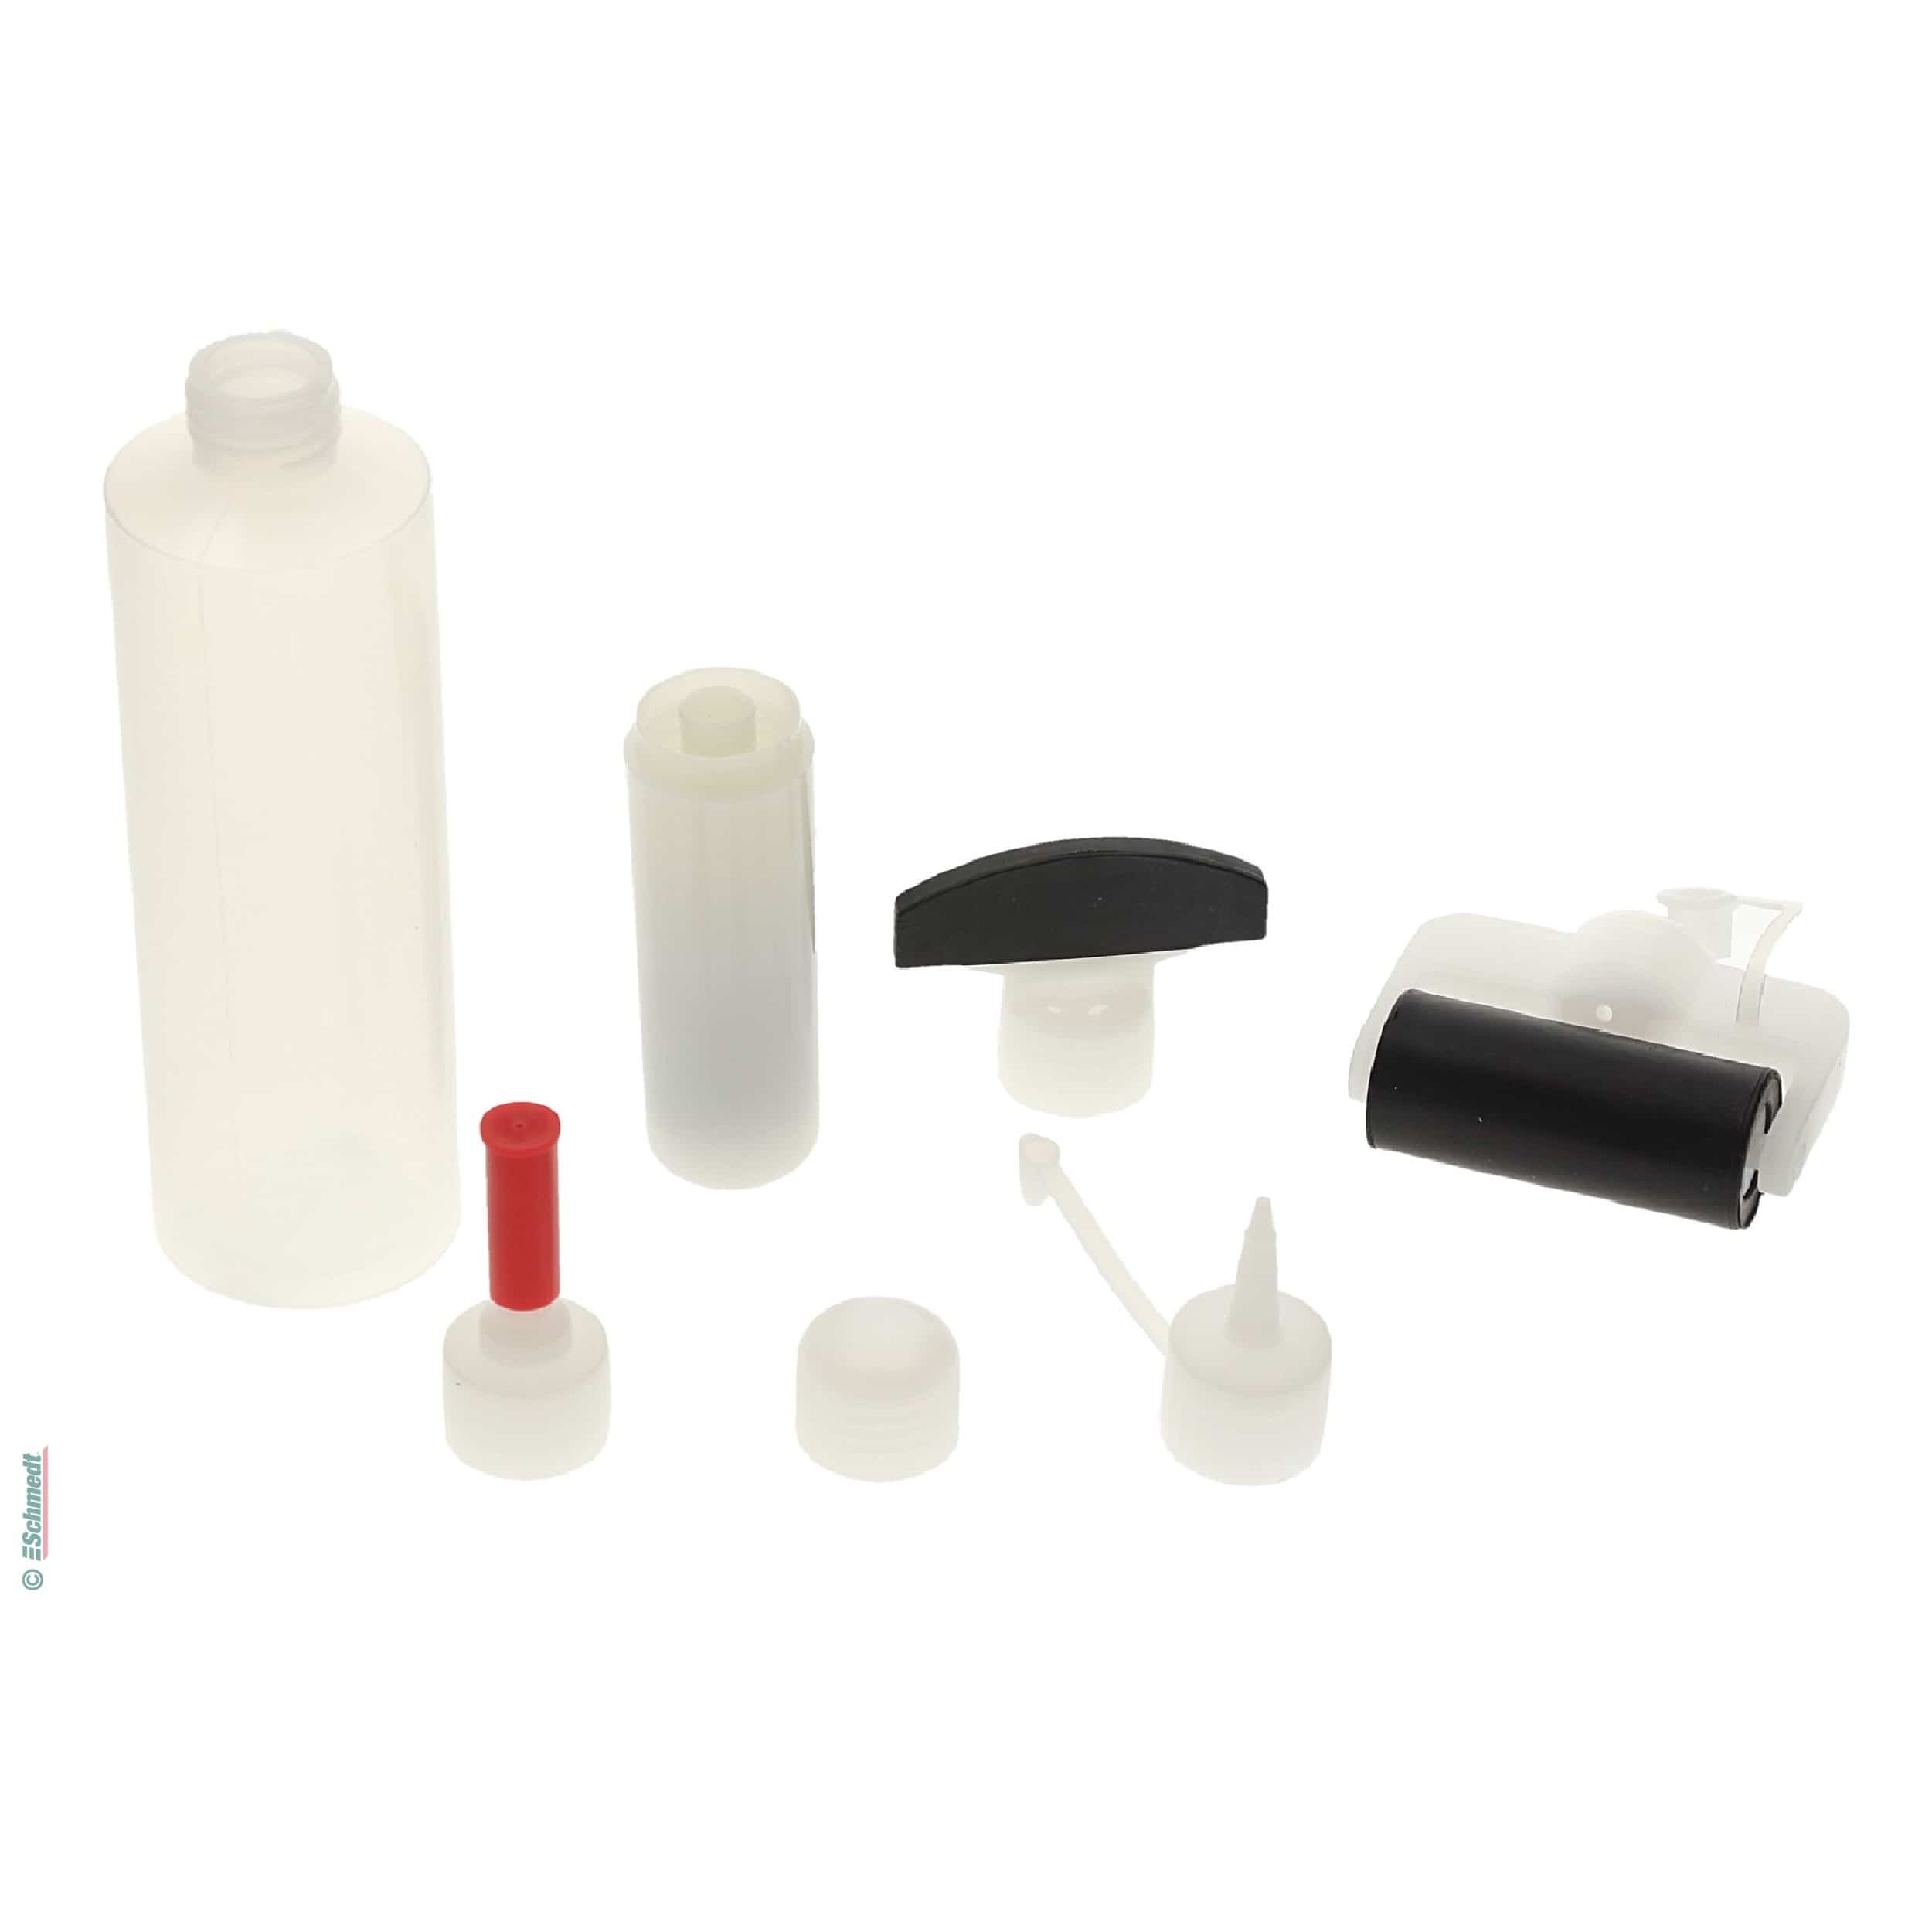 Dispensador de cola universal con 5 adaptadores - Capacidad aprox. 250 ml - para una práctica dosificación y trabajar de forma limpia la col... - imagen-1